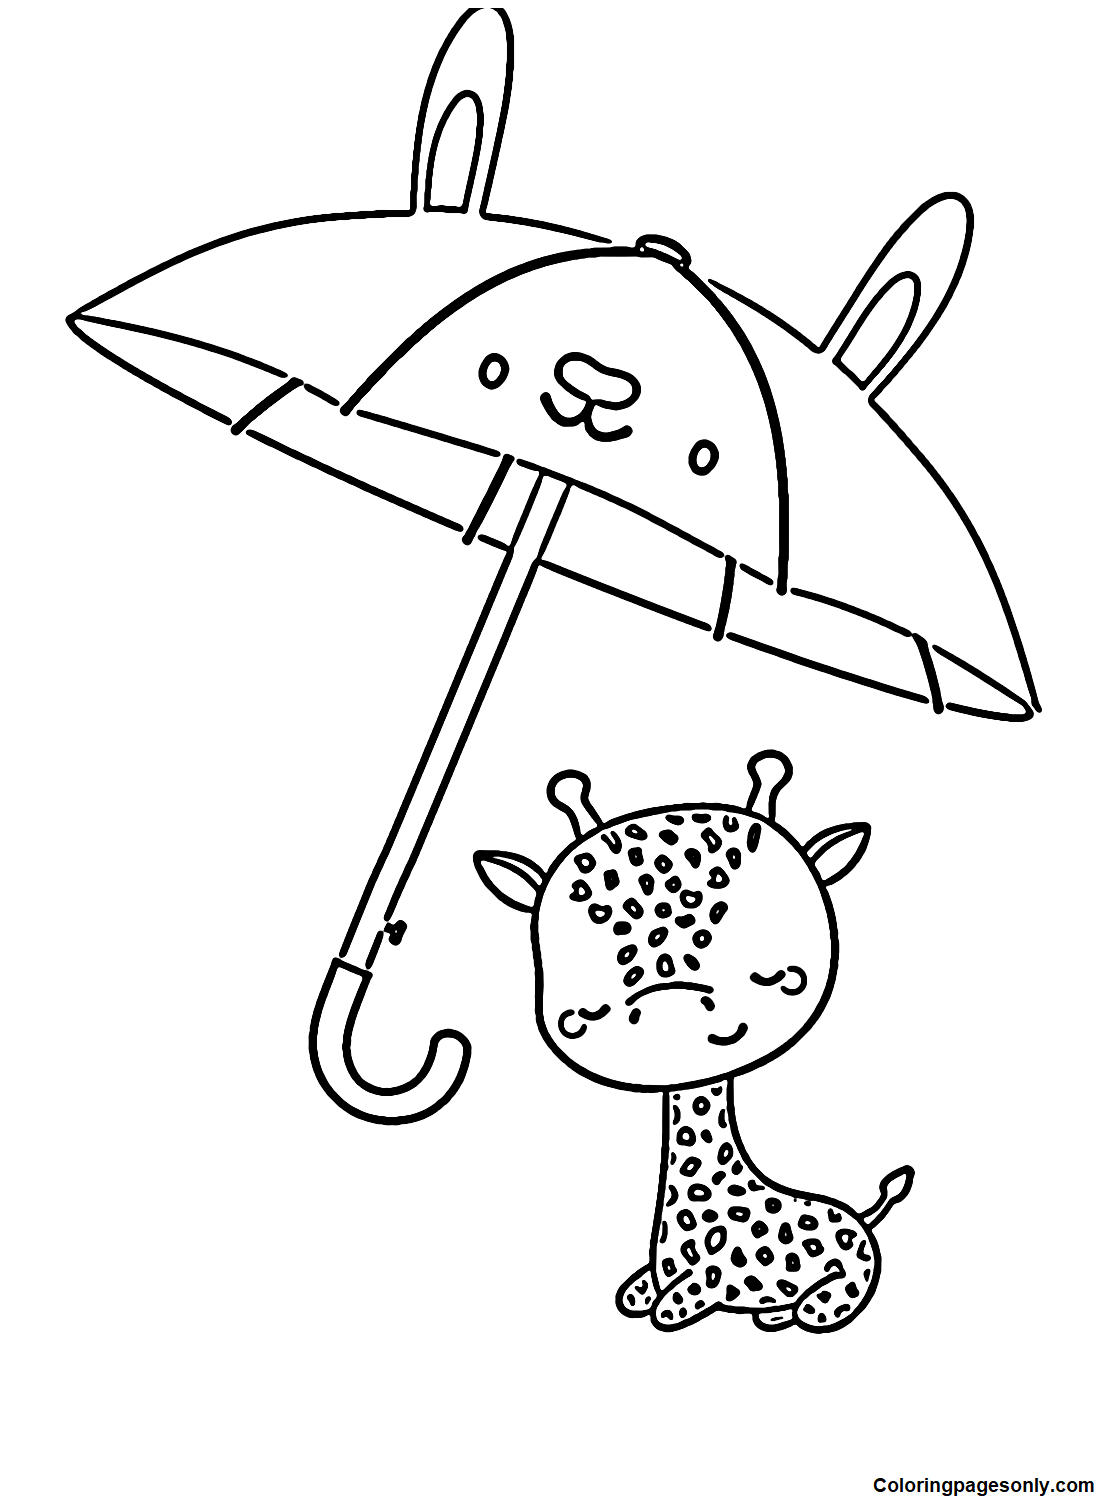 Guarda-chuva e girafa from Umbrella